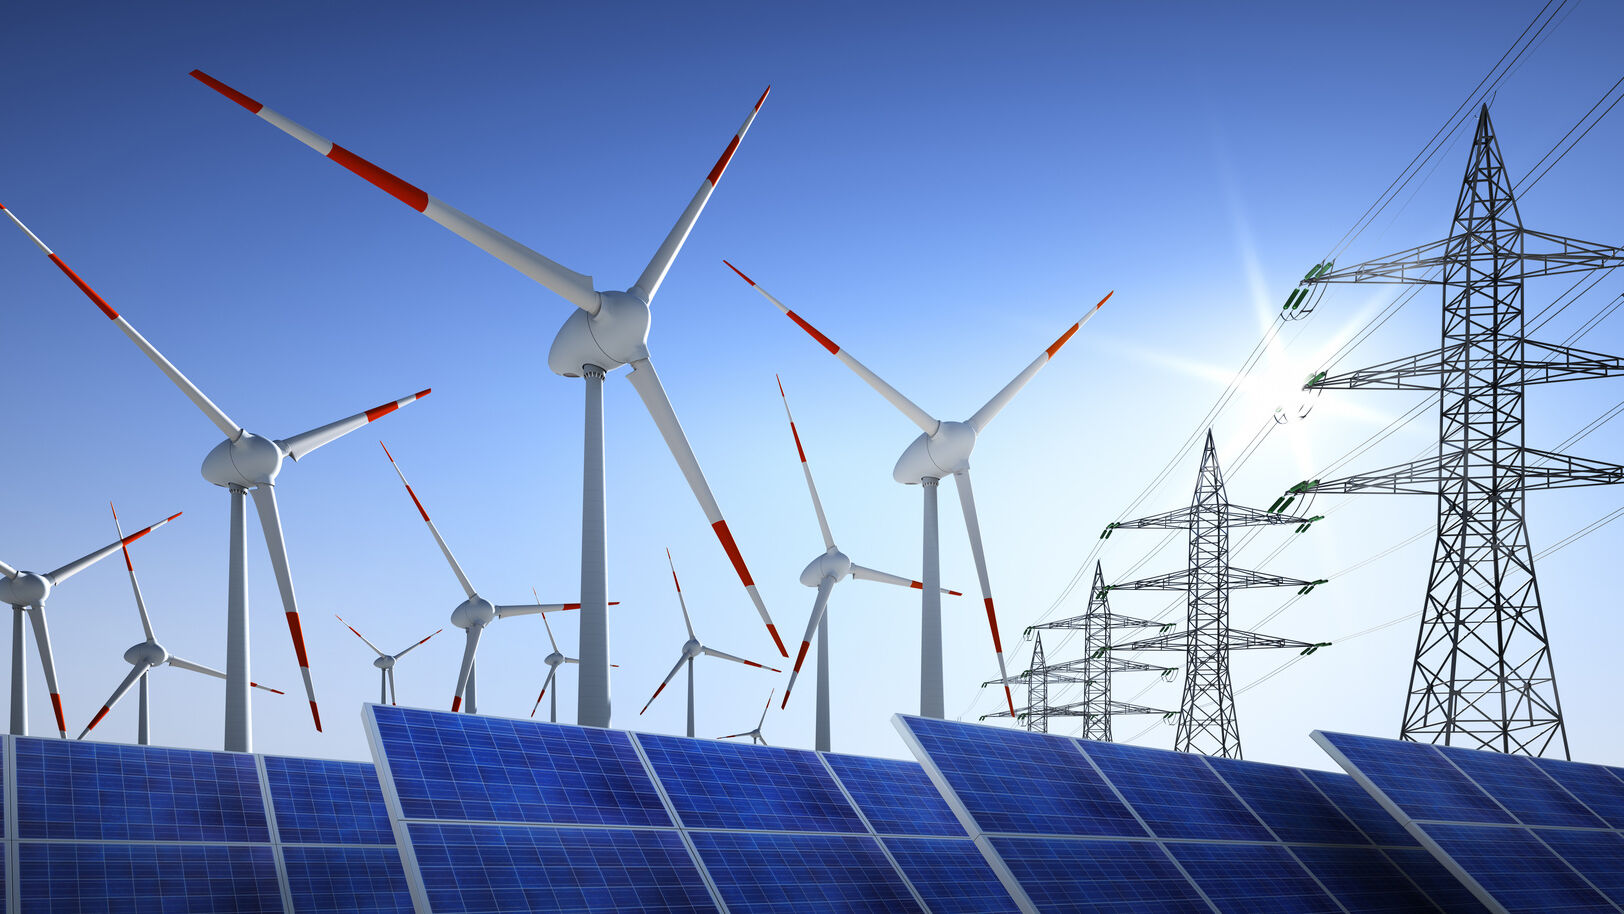 Solarmodule Windkraftraeder und Stromleitungen vor blauem Himmel